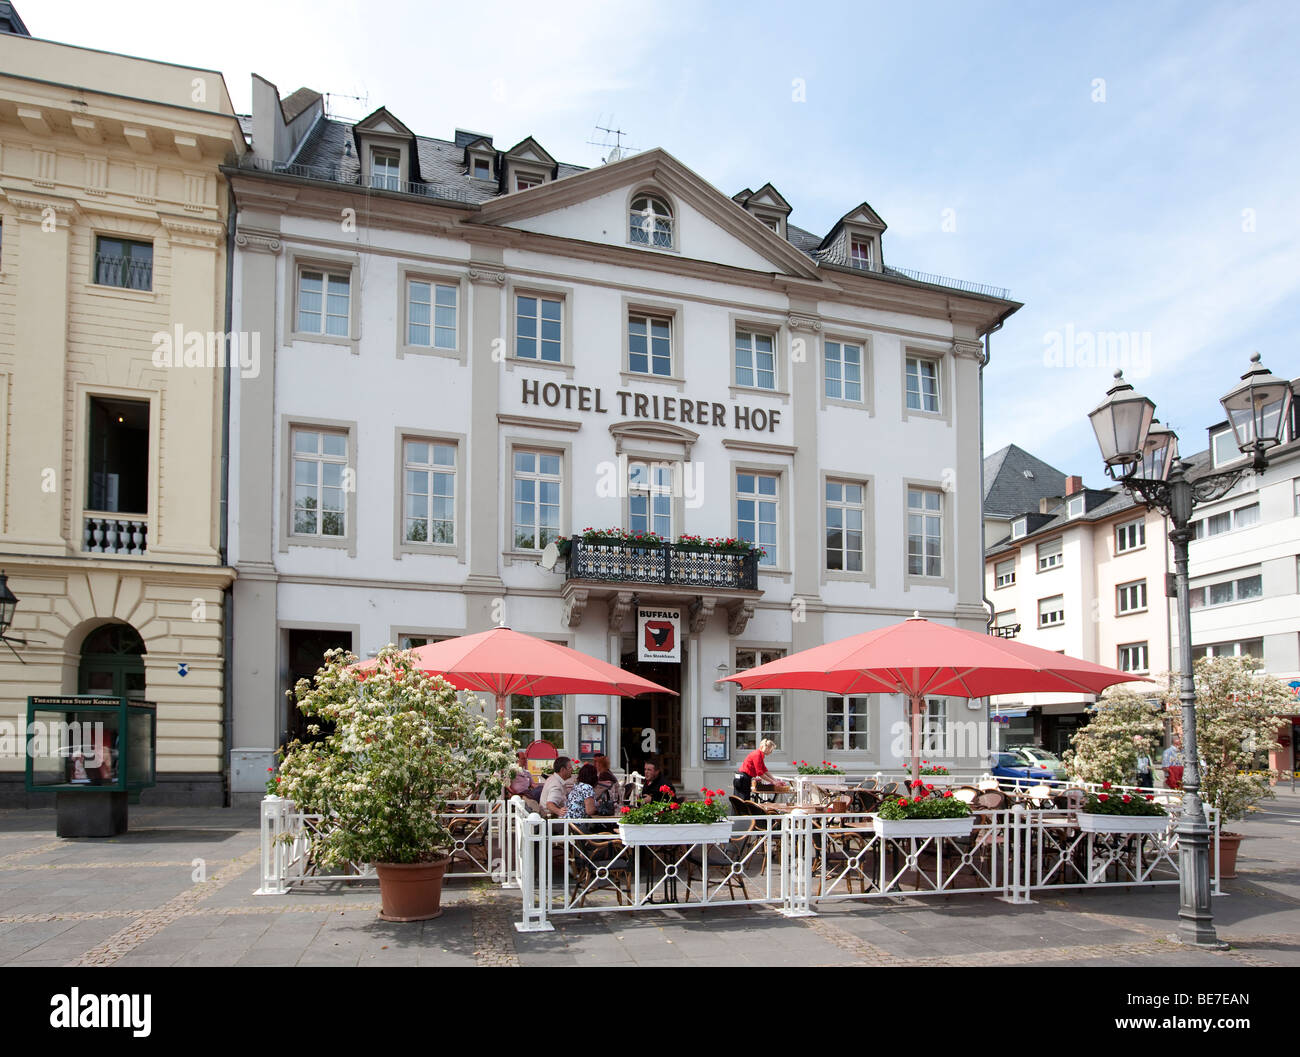 Trierer Hof Hotel, Koblenz, Rhineland-Palatinate, Germany, Europe Stock Photo